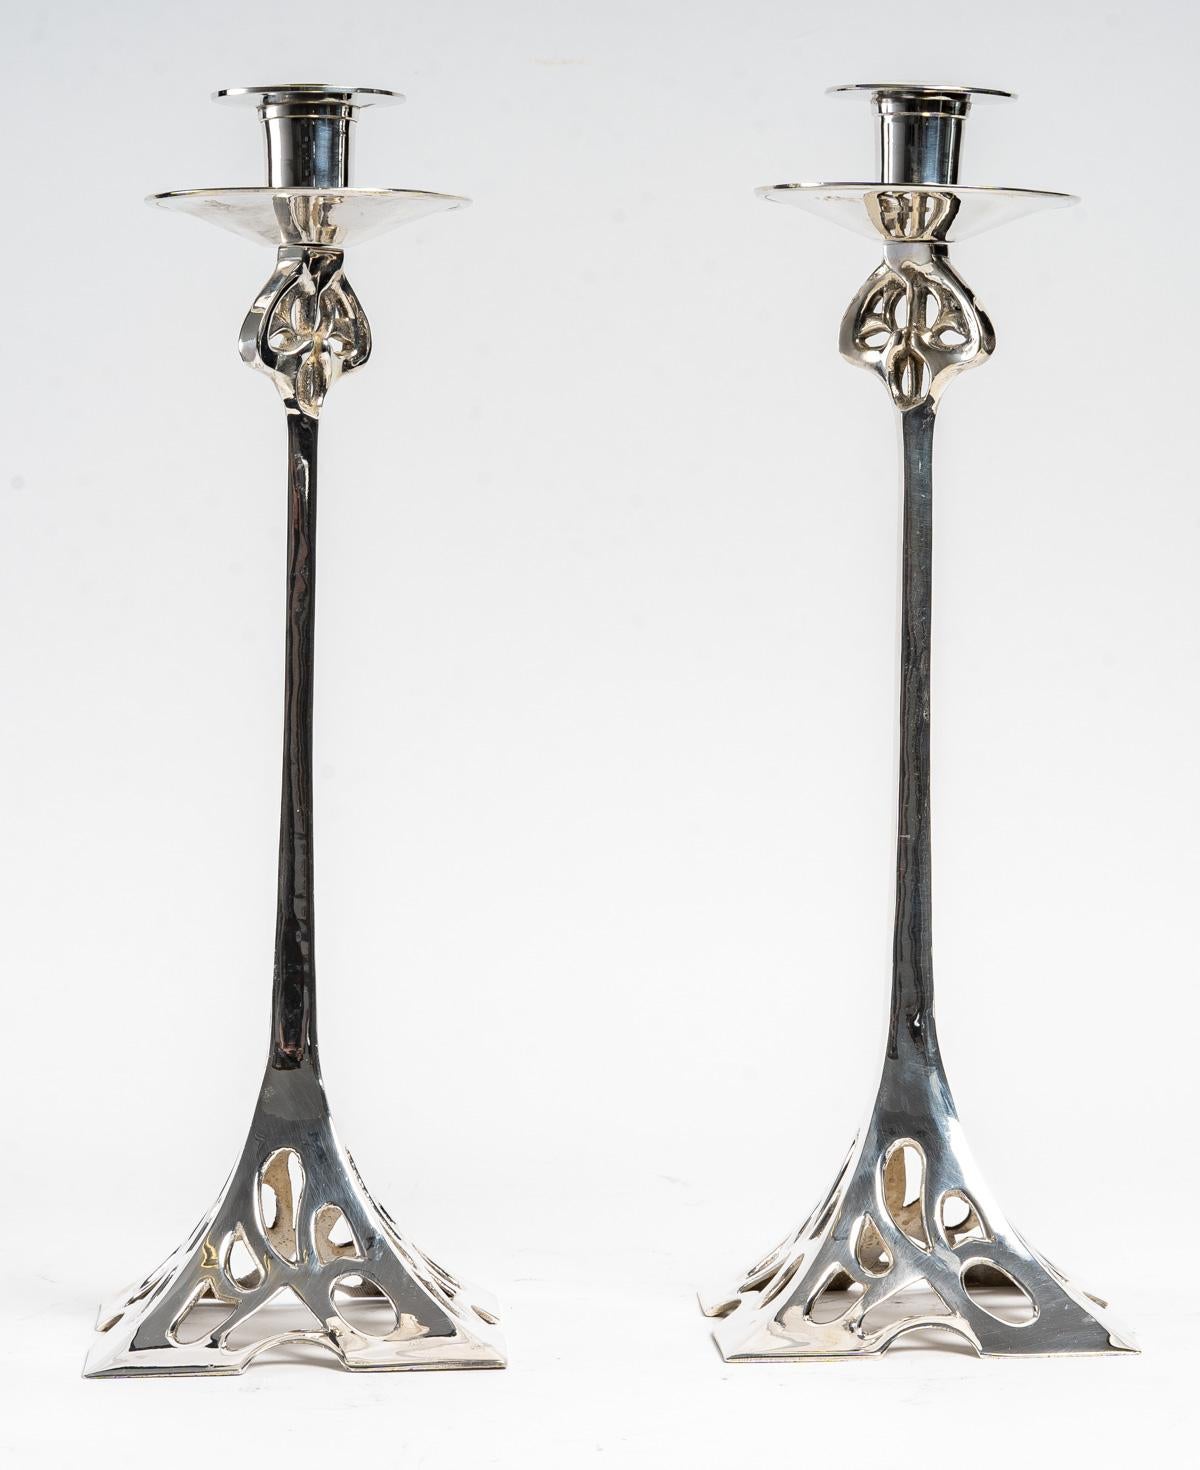 A pair of Art Nouveau silver plated bronze candlesticks.
Measures: H: 38 cm, base: 16 cm.